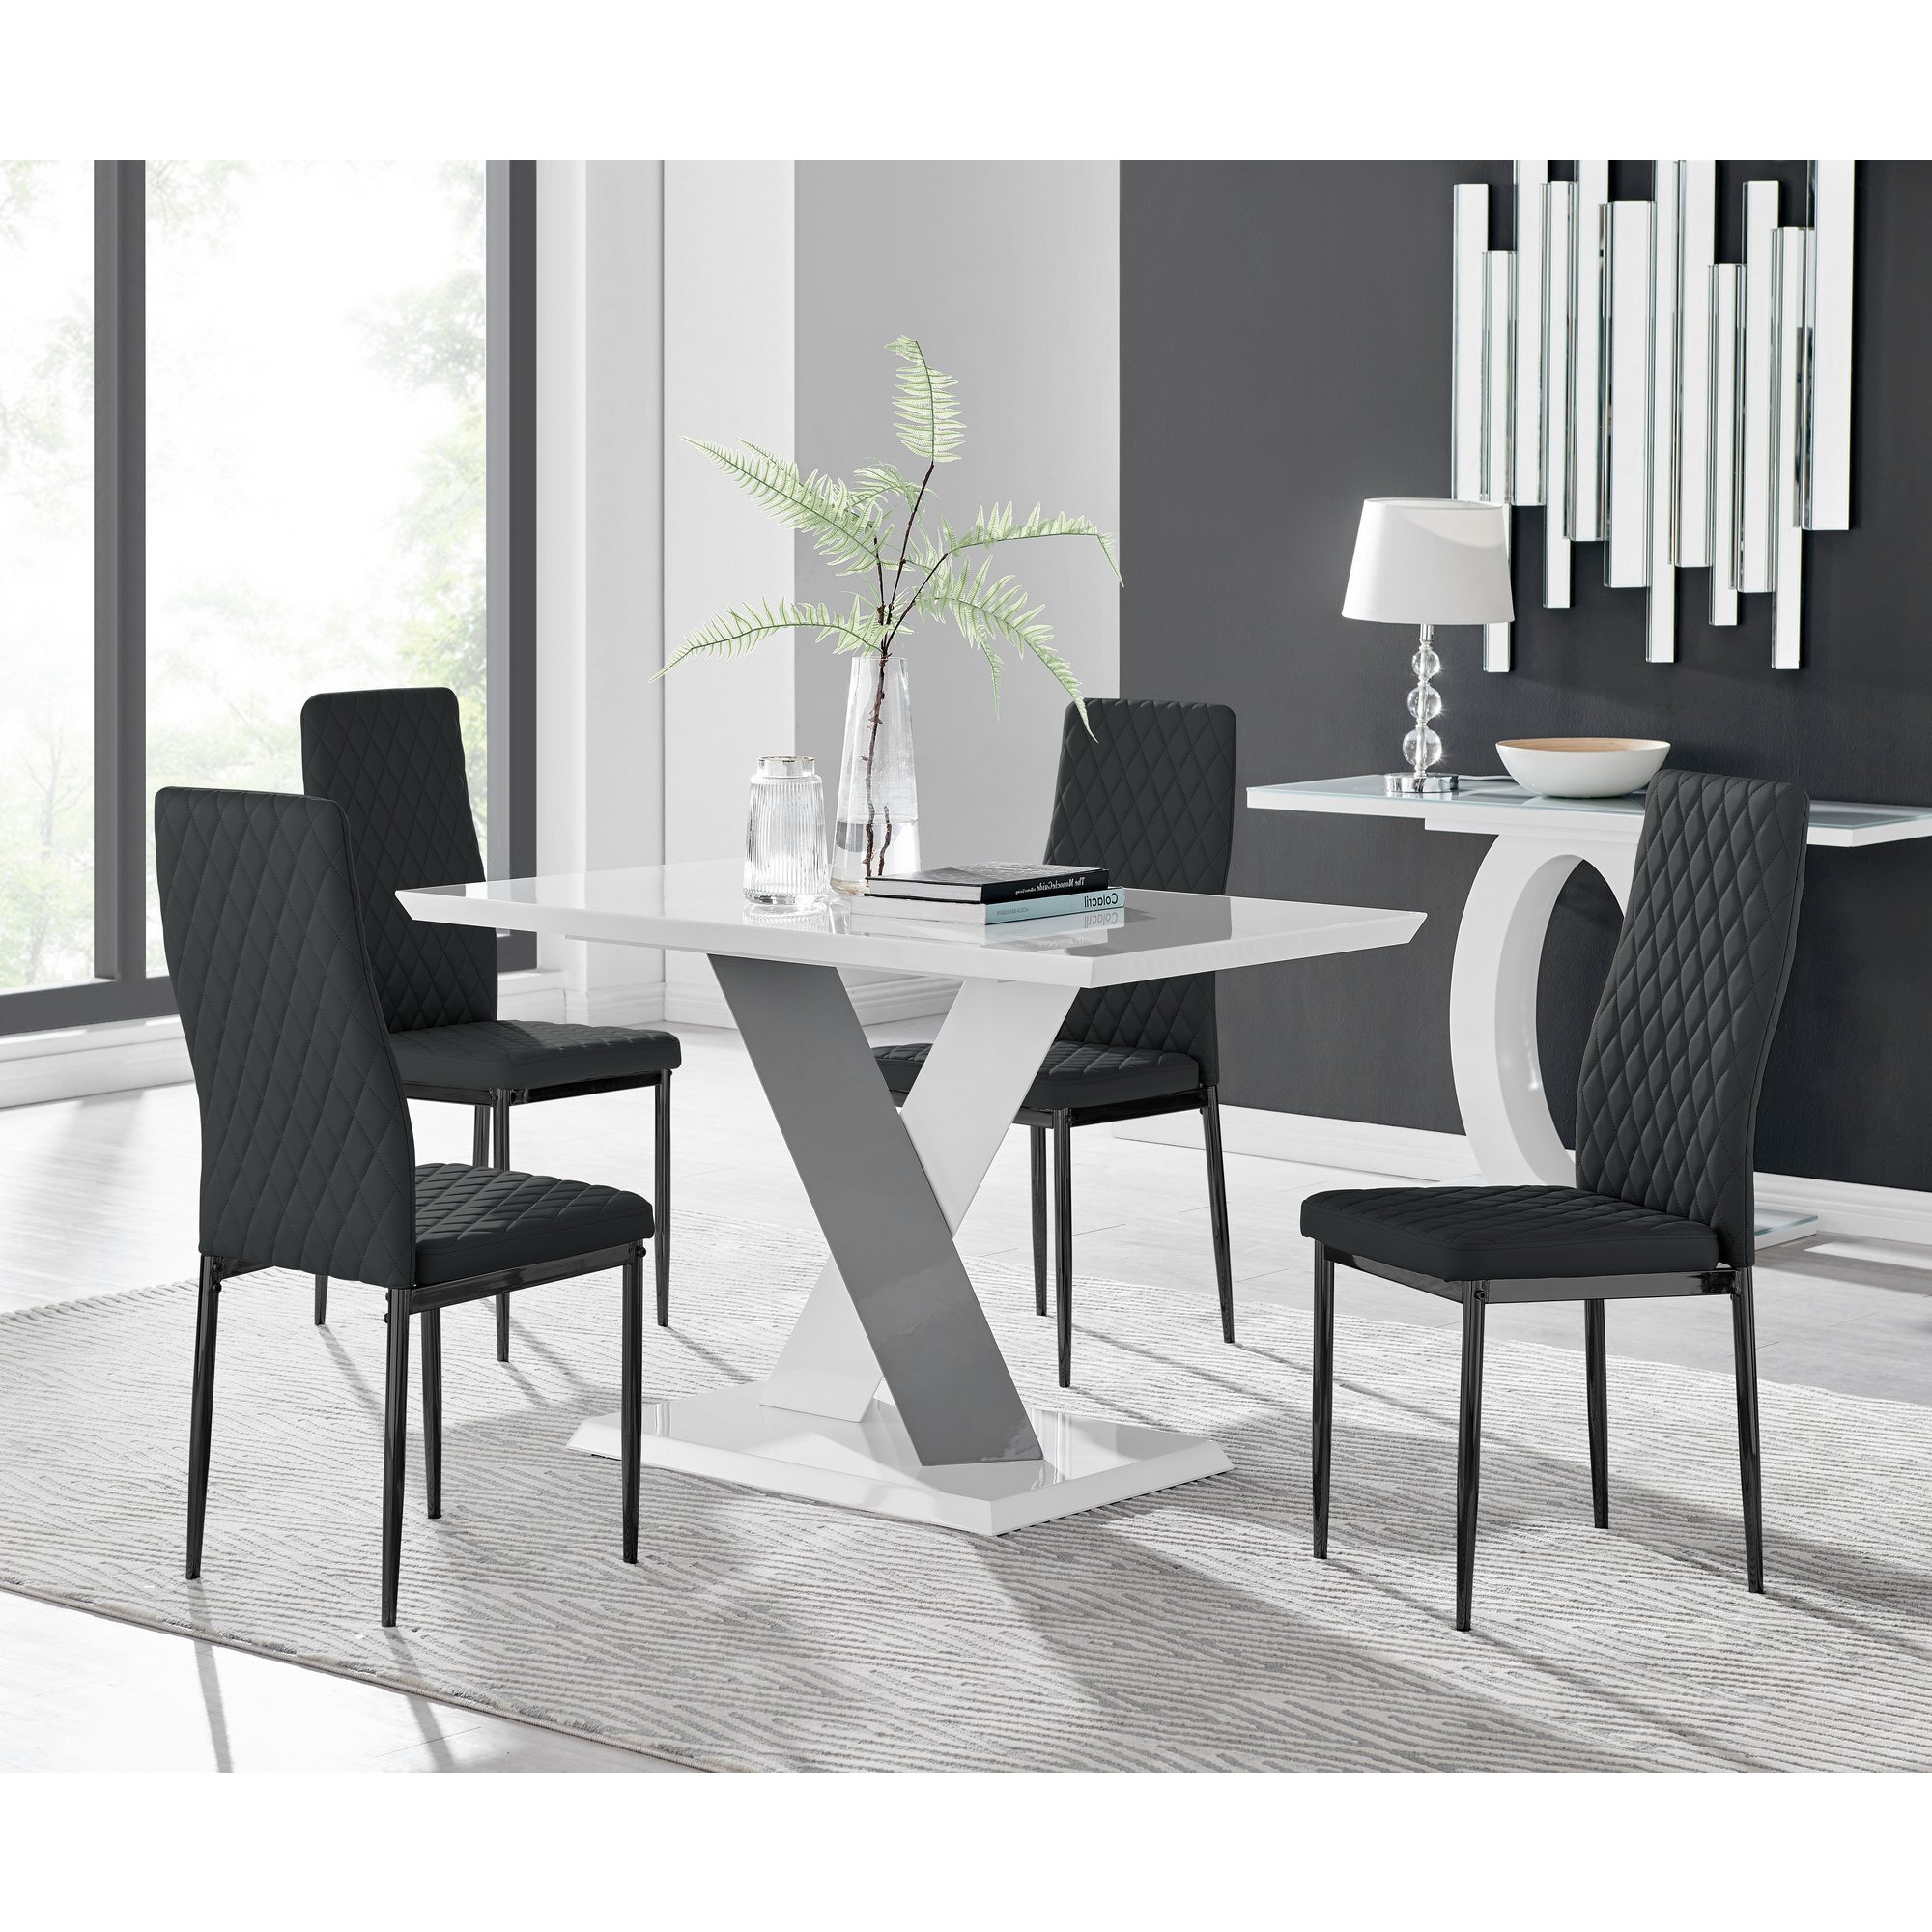 Monza 4 White/Grey Dining Table & 4 Milan Black Leg Chairs